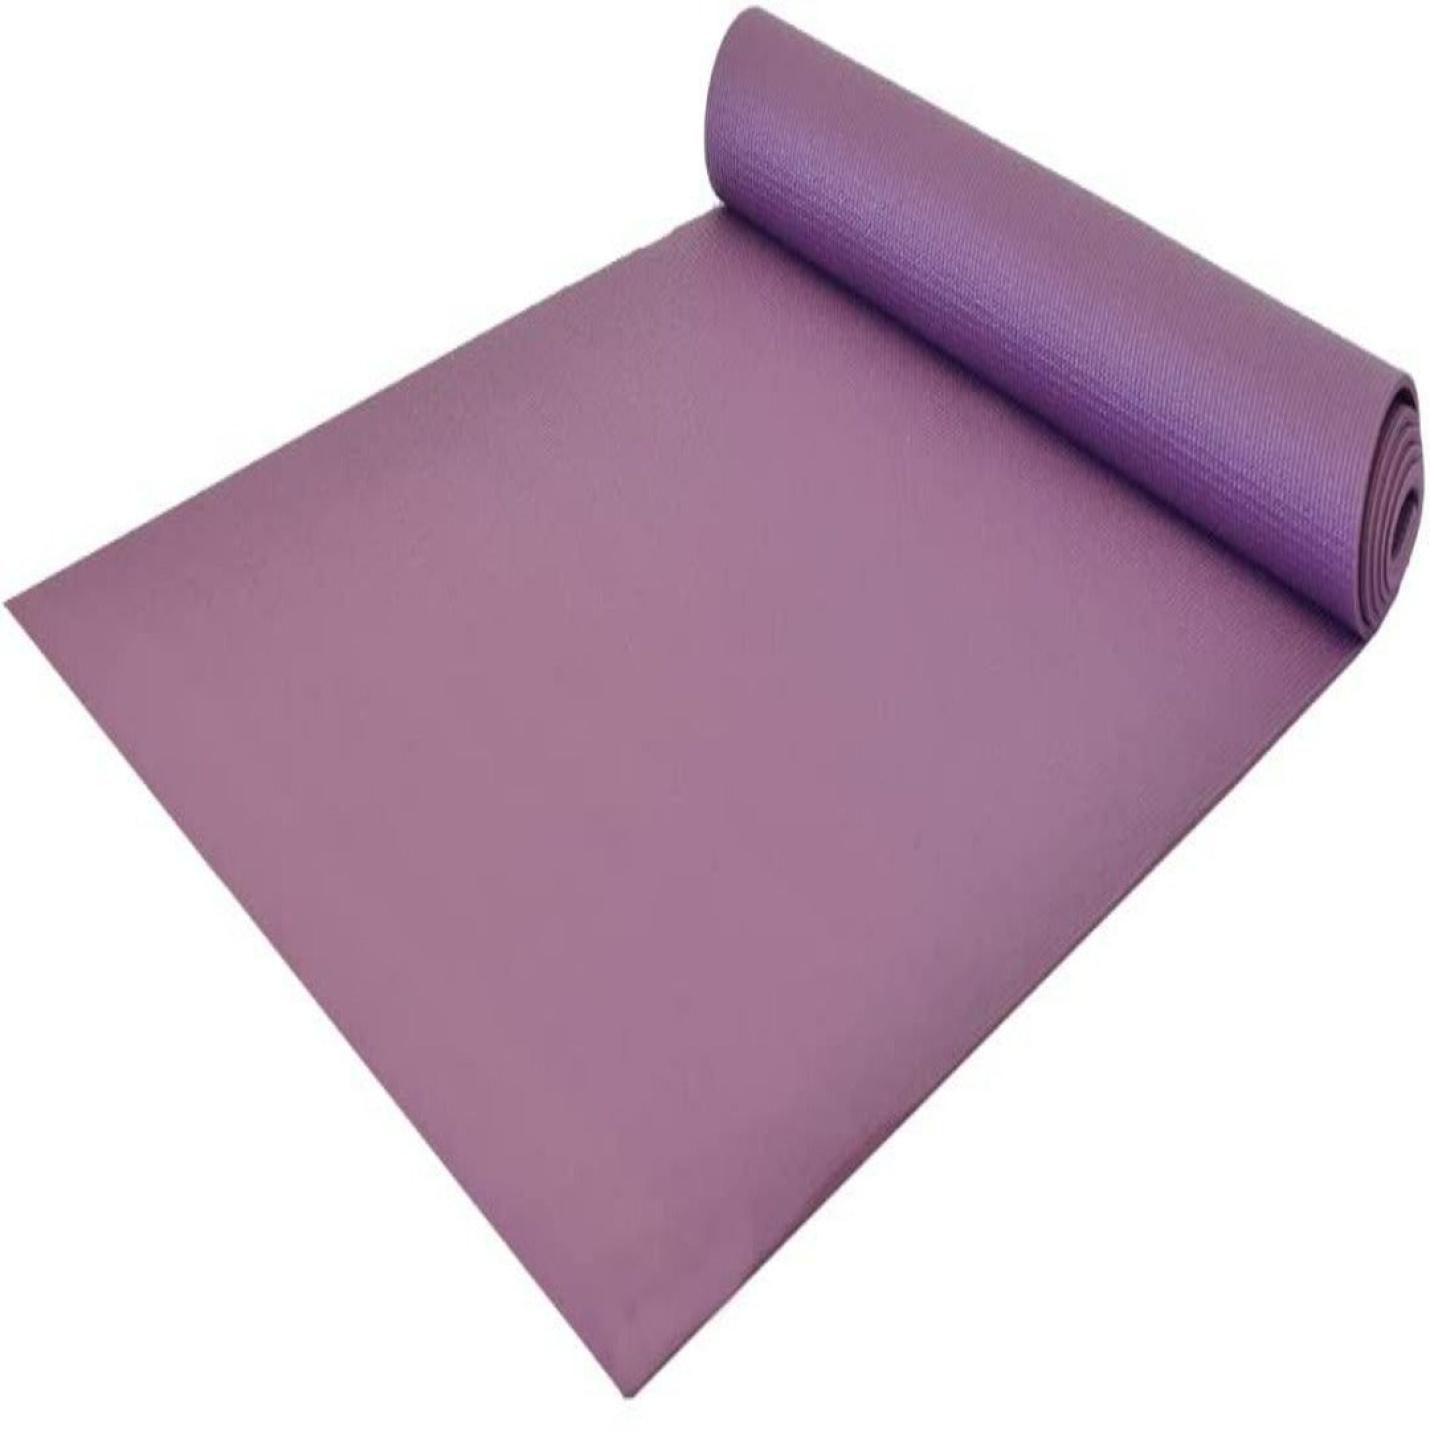 Yoga en fitness mat - beste kwaliteit, slijtvast en duurzaam - 183 x 61 cm, 4 mm dik